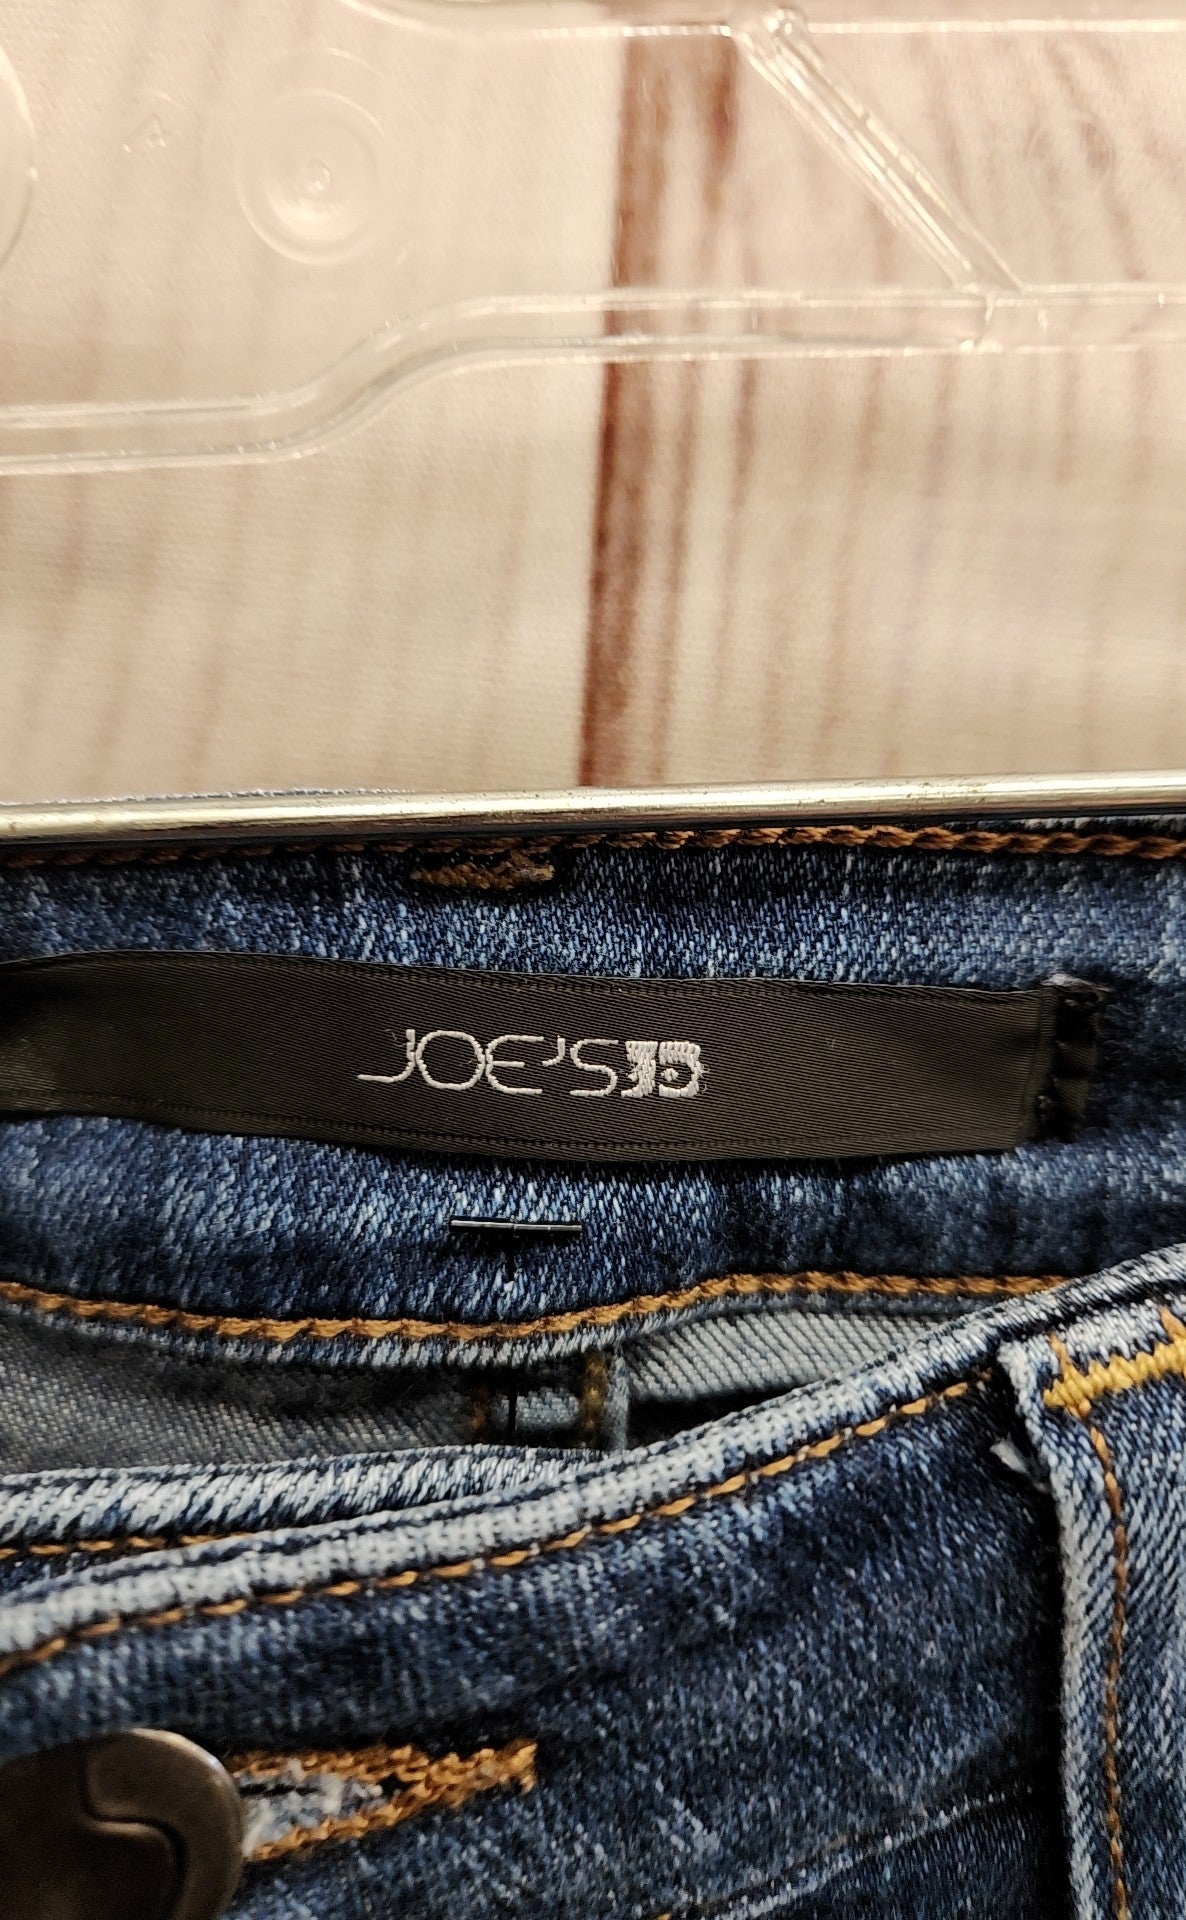 Joe's Women's Size 29 (7-8) Blue Jeans